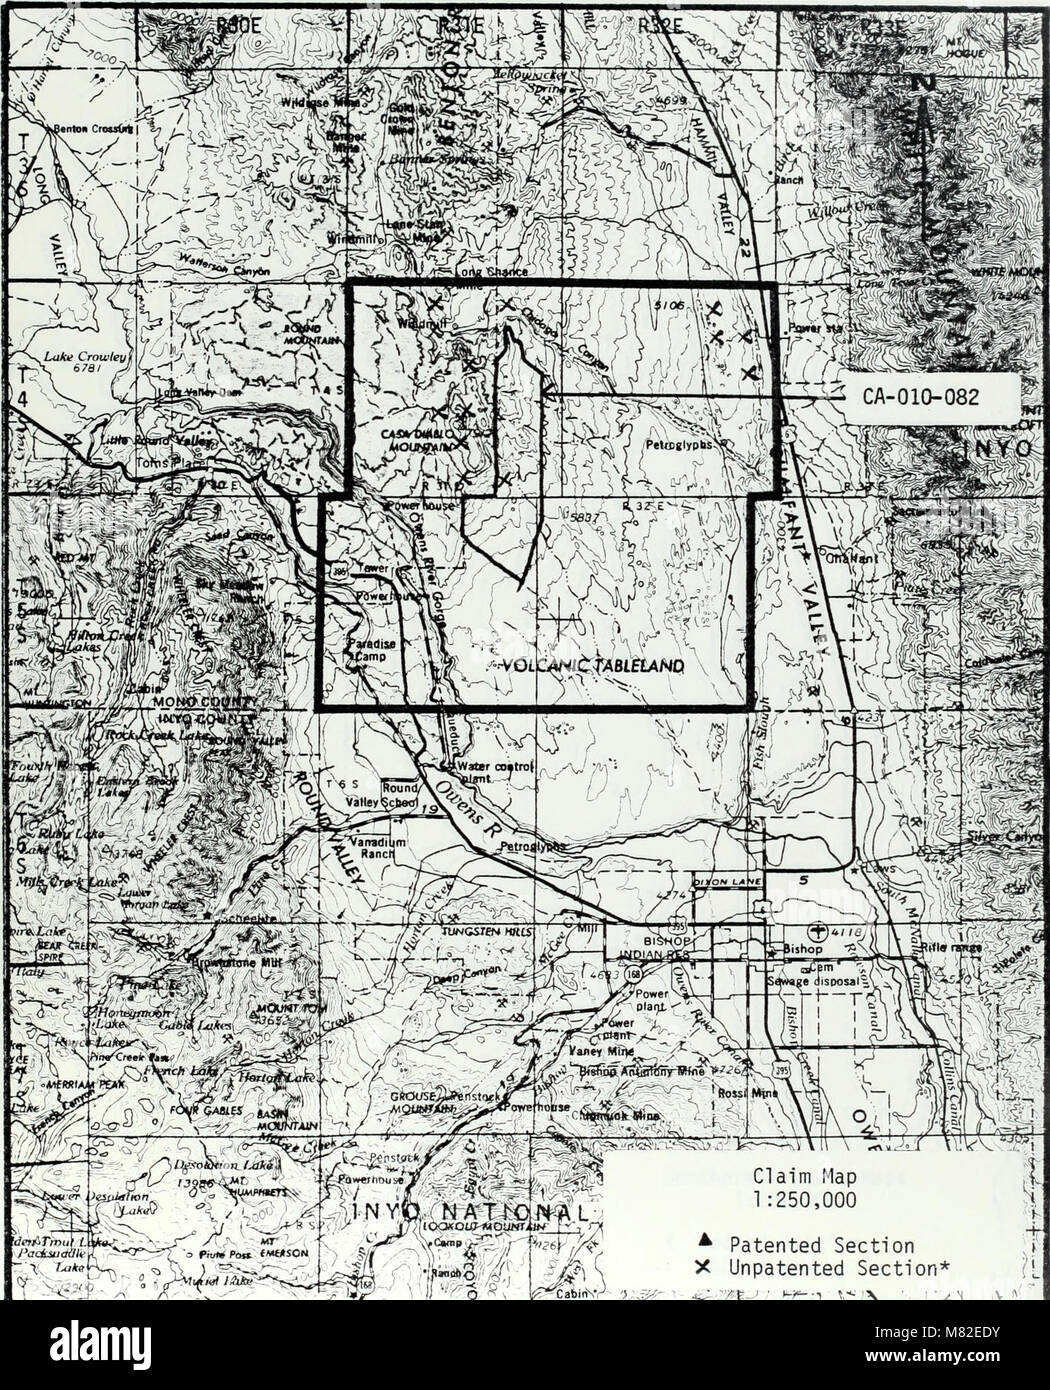 Casa Diablo G-E-M resources area (GRA no. CA-06) - technical report (WSA CA 010-082) - final report (1983) (20351230238) Stock Photo